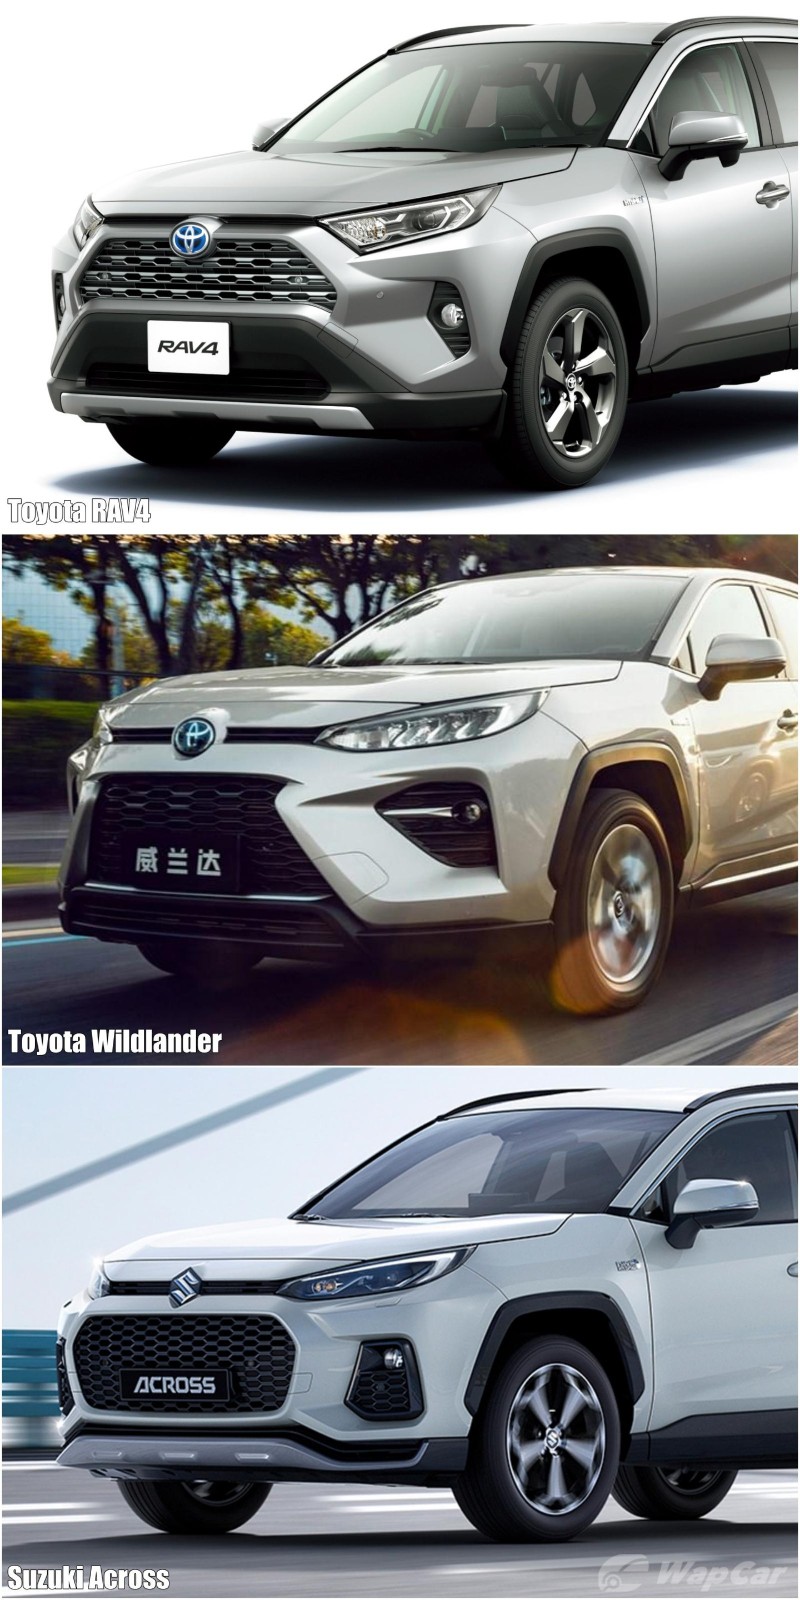 Toyota Wildlander Wallpapers